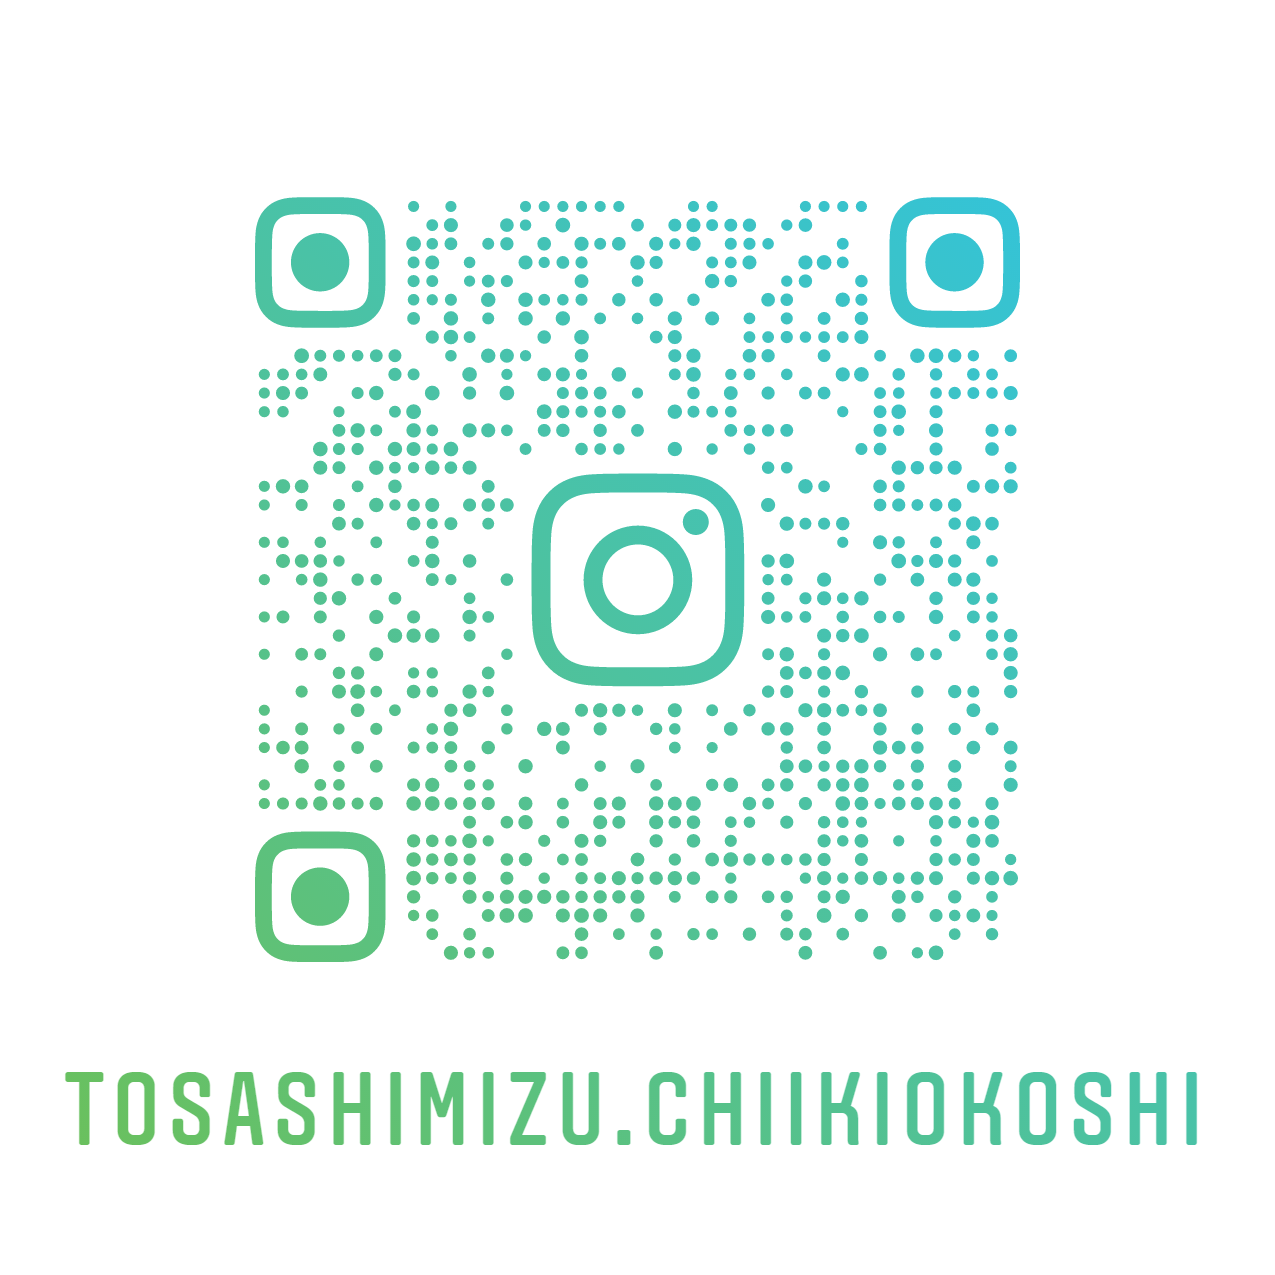 tosashimizu.chiikiokoshi_nametag.png